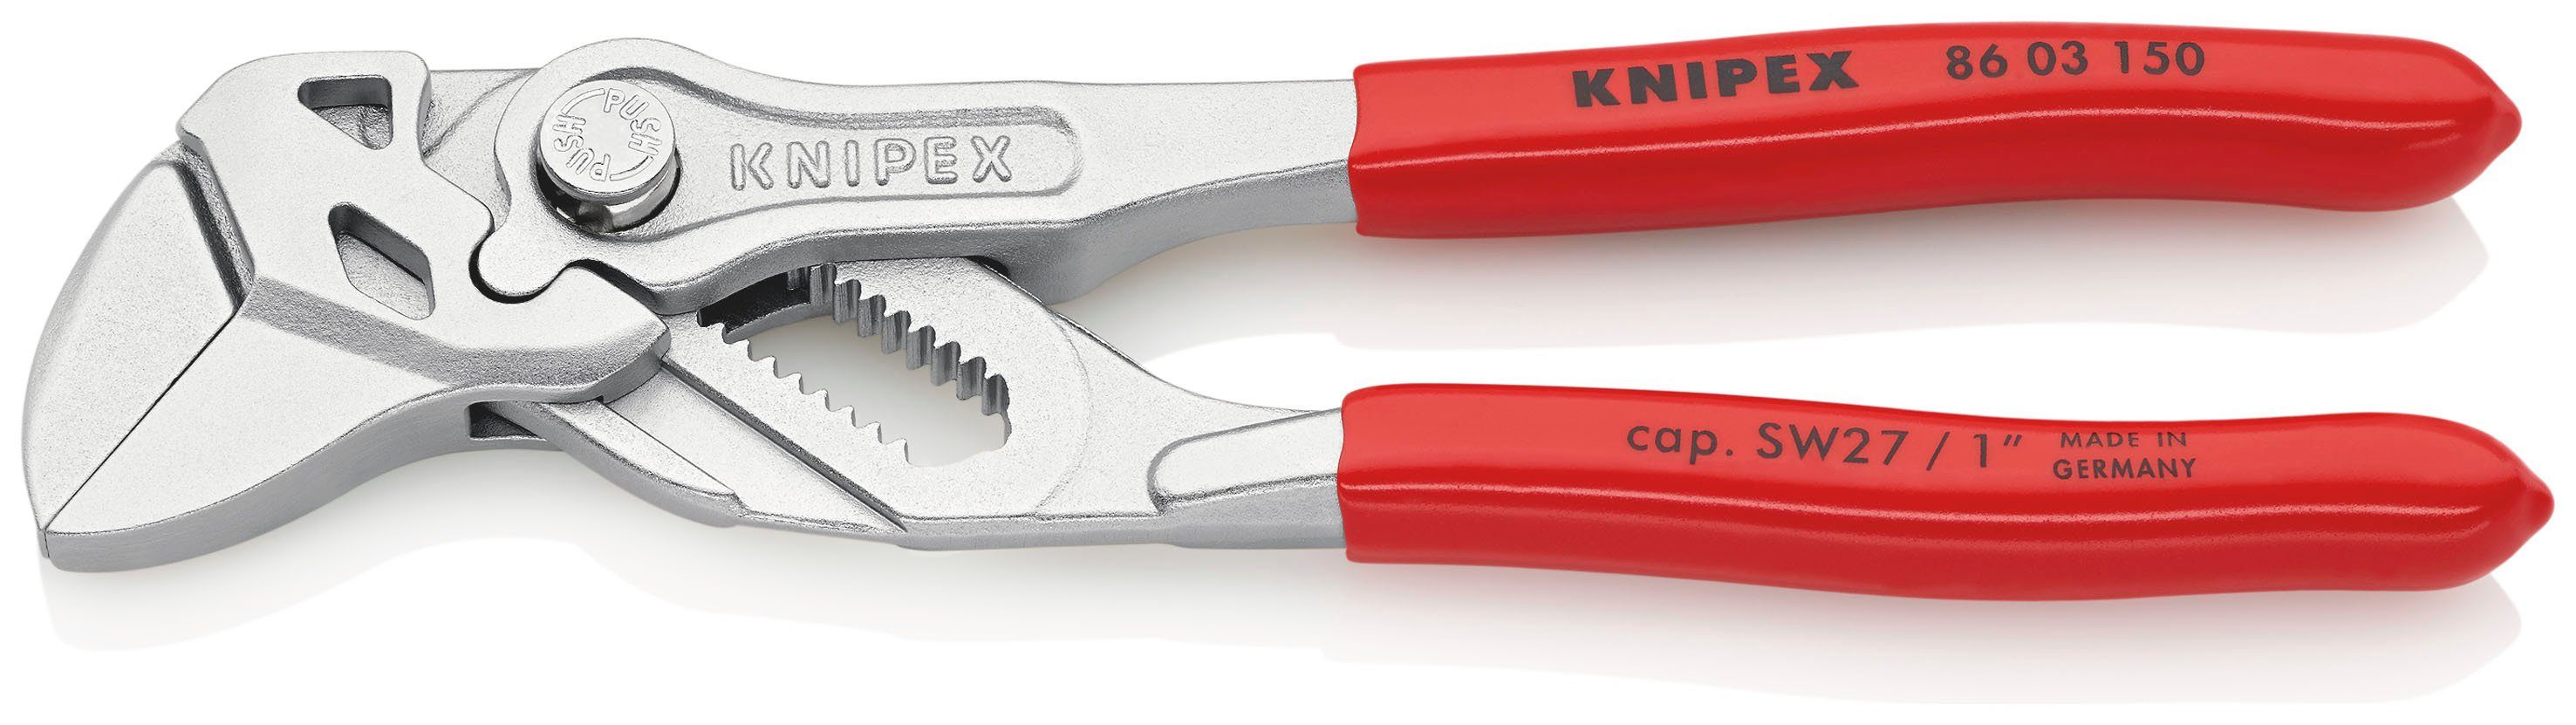 Knipex Щипцыschlüssel 86 03 150 Zange und Schraubenschlüssel in einem Инструмент, 1-tlg., verchromt, mit Kunststoff überzogen 150 mm